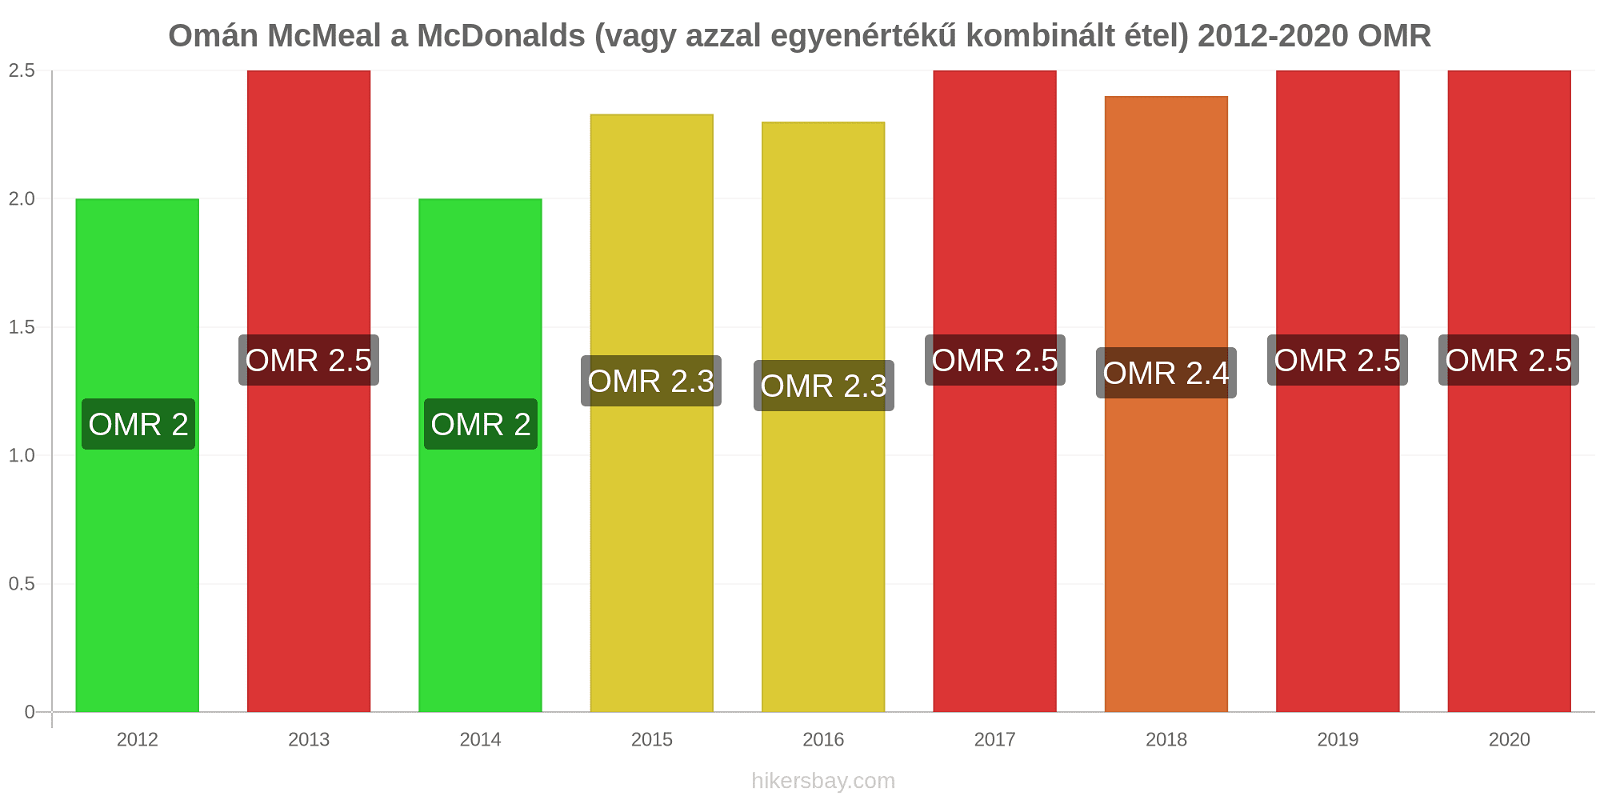 Omán árváltozások McMeal a McDonalds (vagy azzal egyenértékű kombinált étel) hikersbay.com